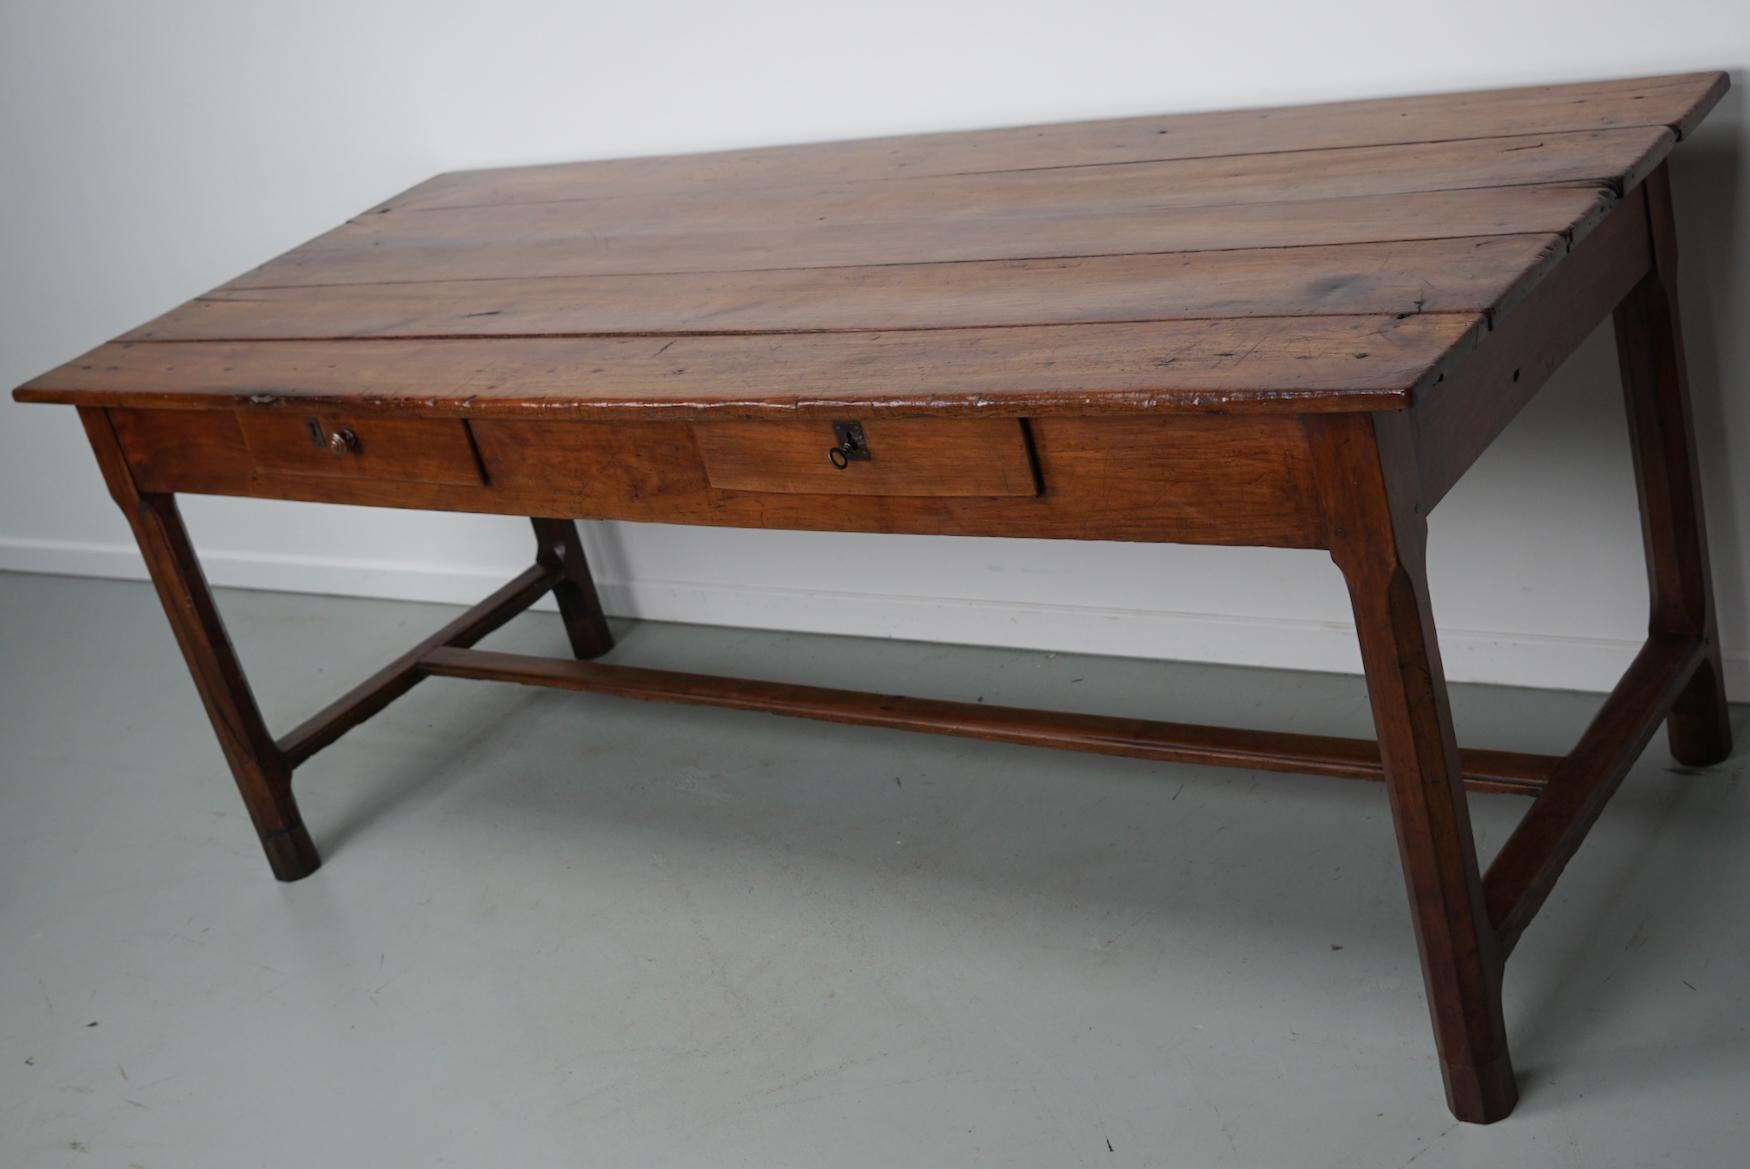 Cette élégante table a été fabriquée dans le sud de la France au milieu du XIXe siècle. La table a été fabriquée en cerisier massif avec de magnifiques veinures. La couleur est très chaude et la table présente de nombreuses marques d'utilisation,